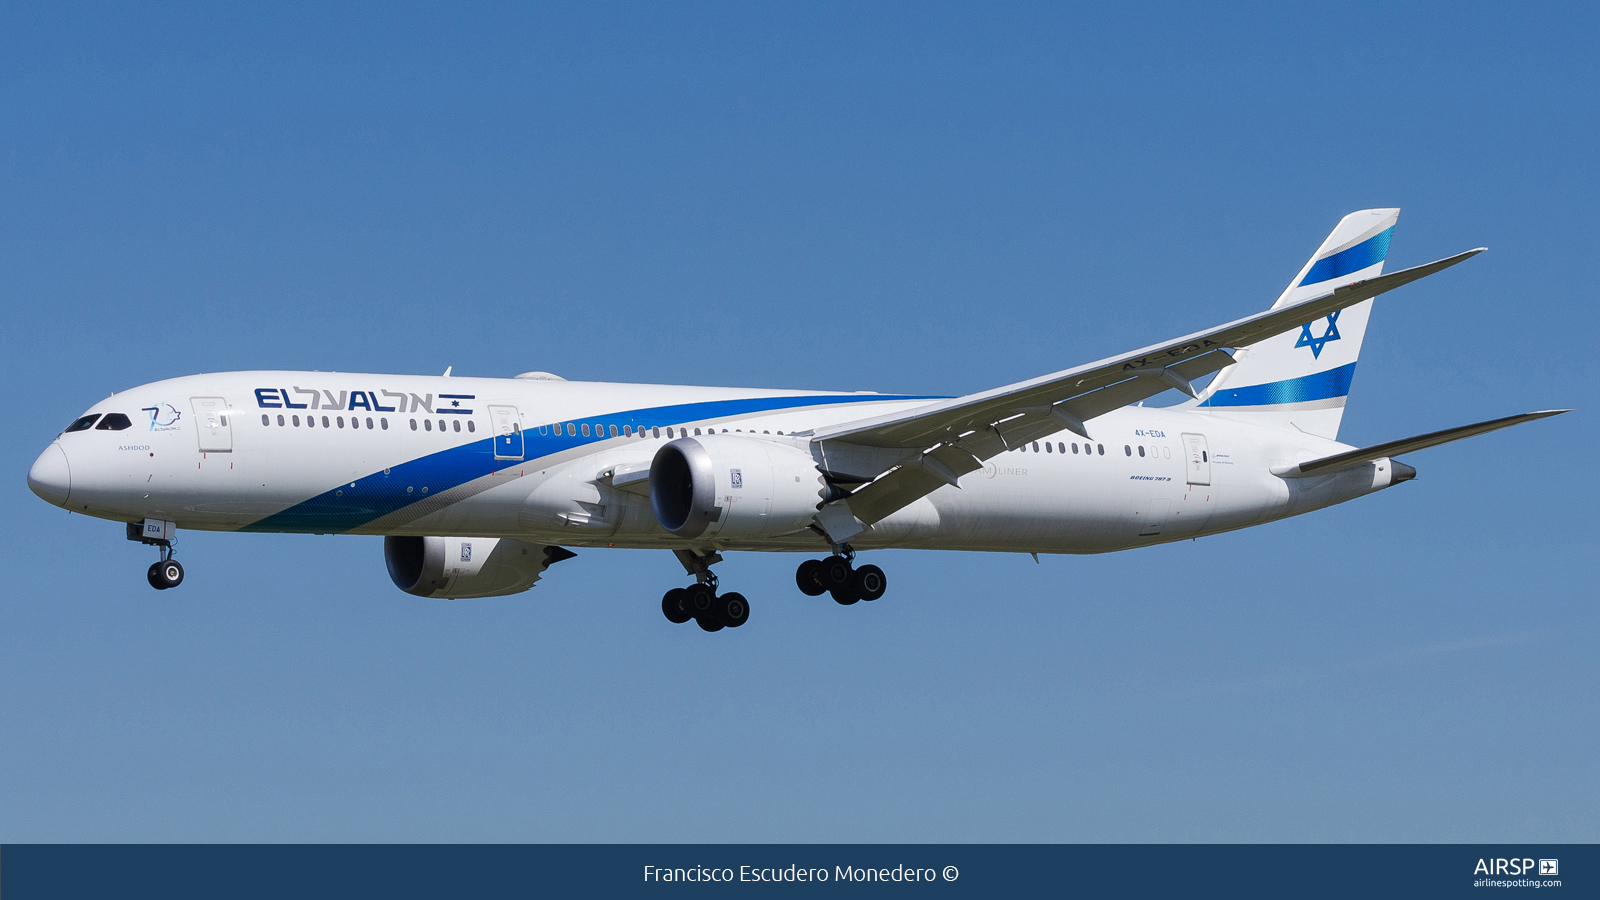 El Al Israel Airlines  Boeing 787-9  4X-EDA